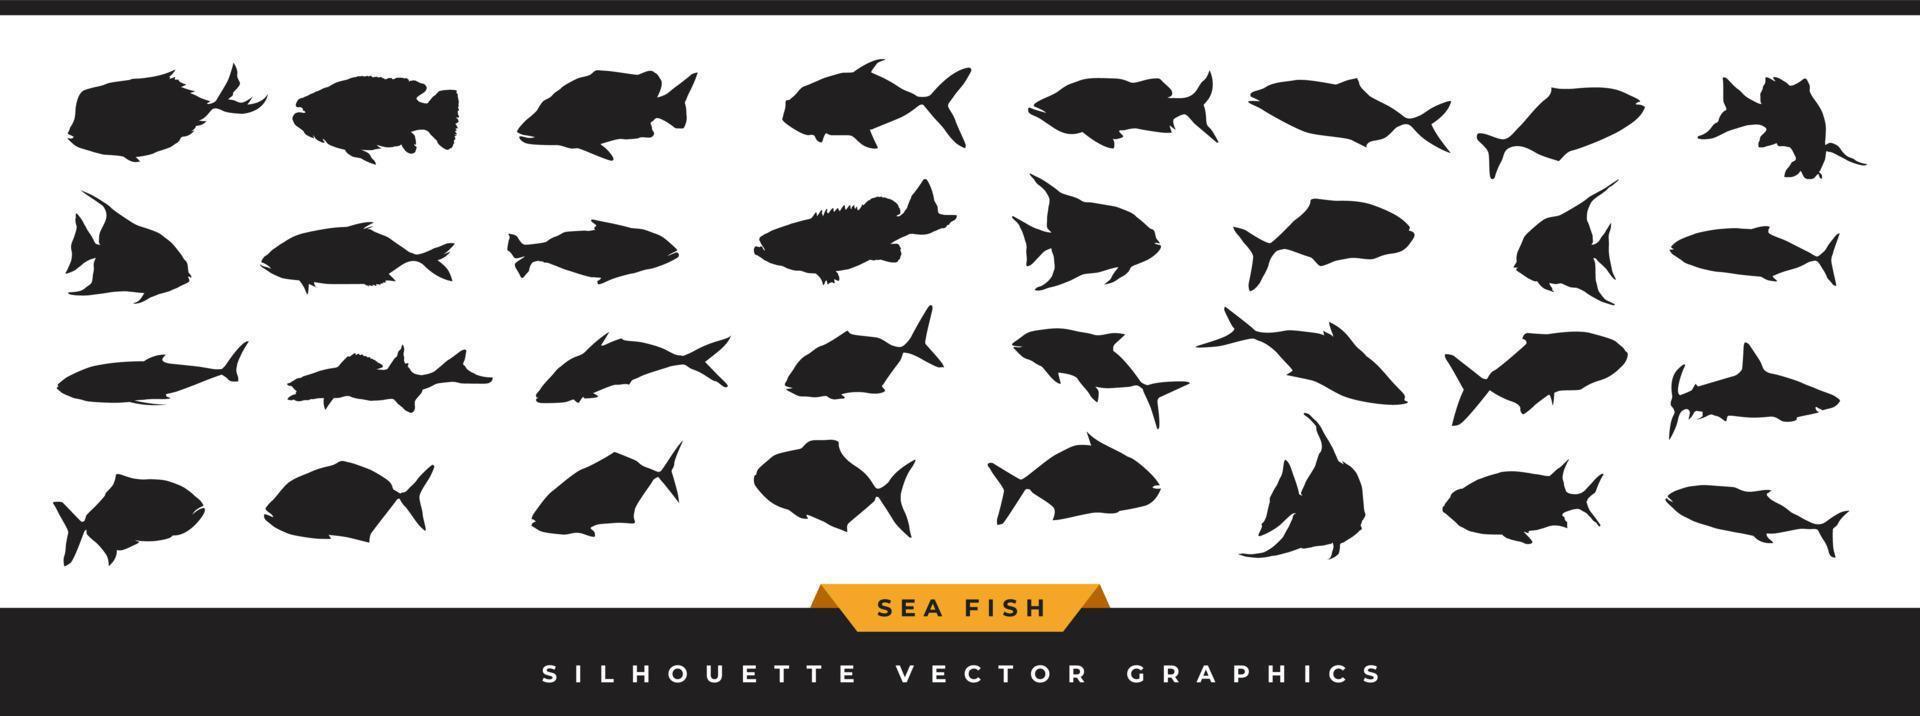 Seefisch-Silhouette. sammlung von ozeanfischsilhouetten. handgezeichnete Meerestier-Vektorsymbole sind in verschiedenen Posen einzeln auf weißem Hintergrund dargestellt. vektor